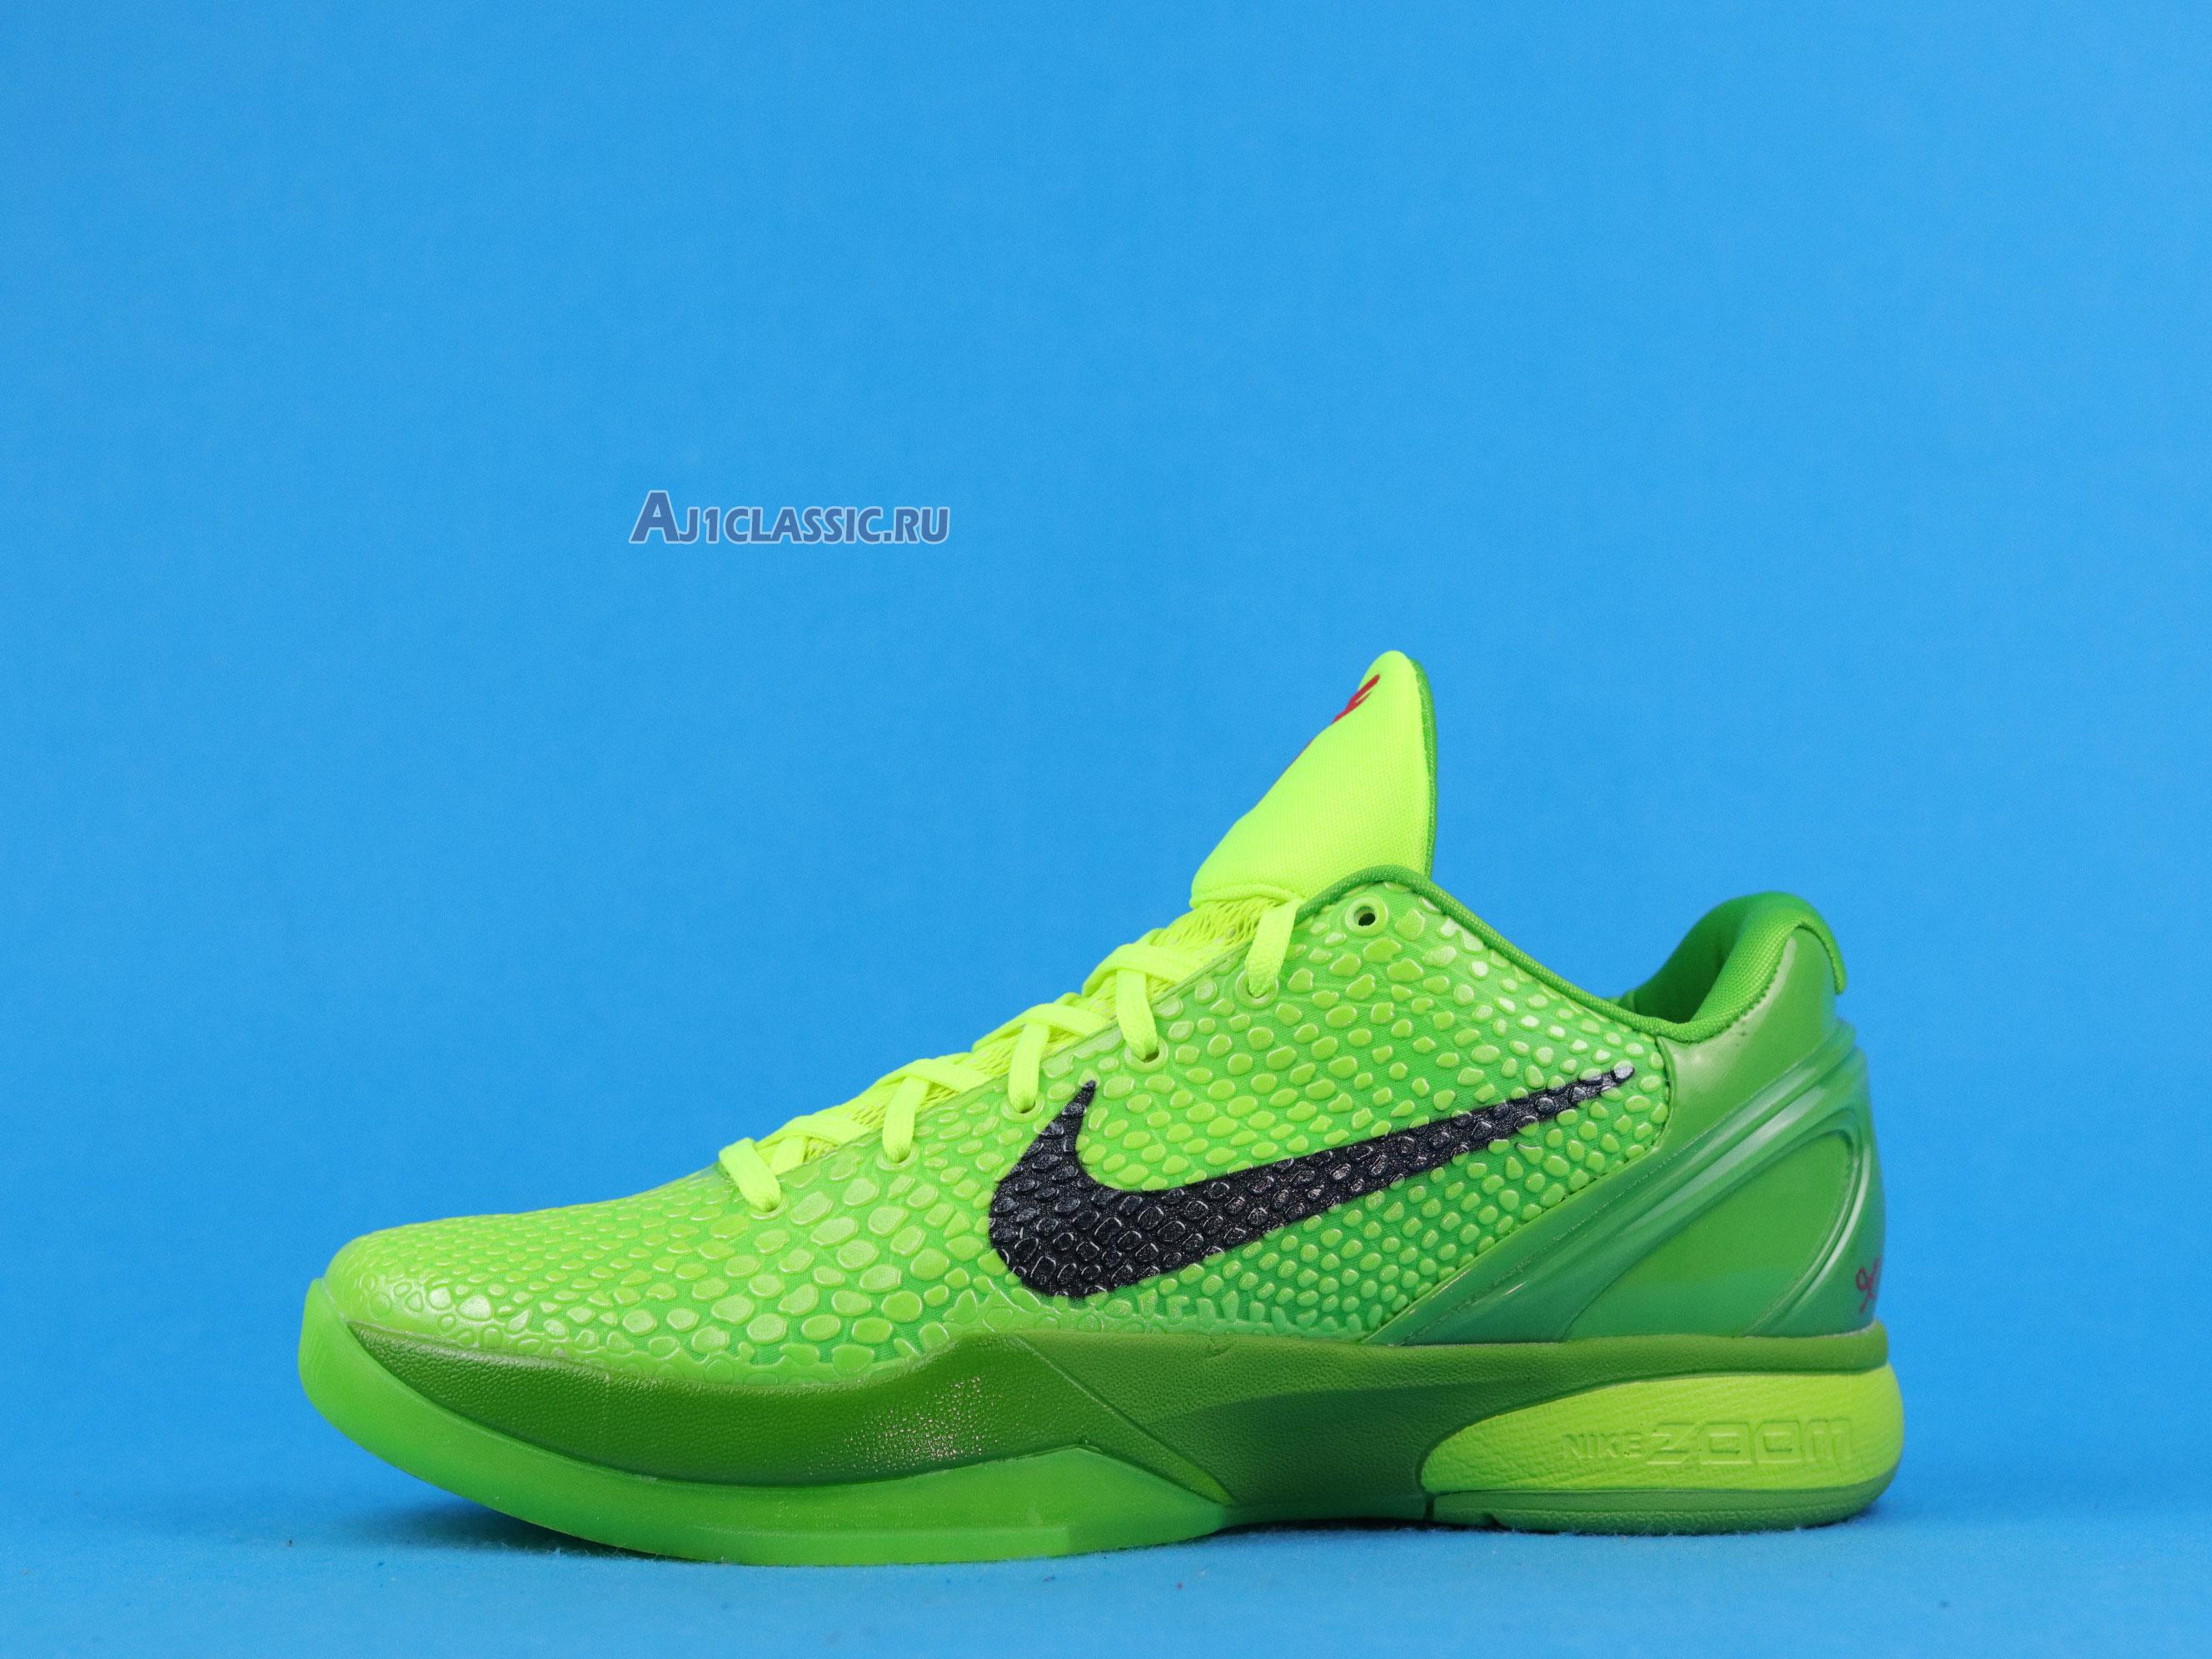 Nike Zoom kobe vi protro Kobe 6 Protro Grinch CW2190-300 Green Apple/Volt/Crimson